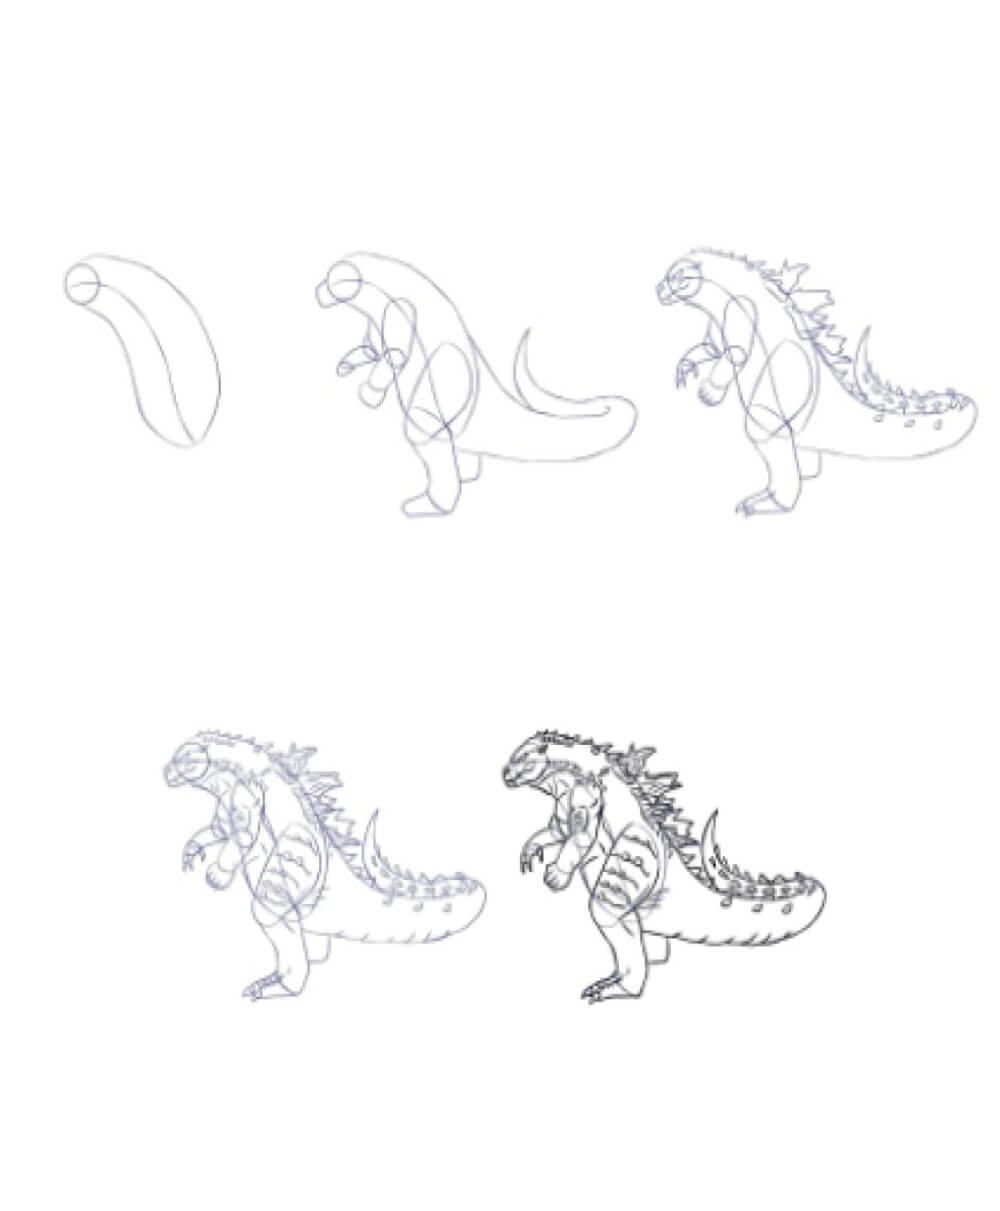 Idée Godzilla (1) dessin